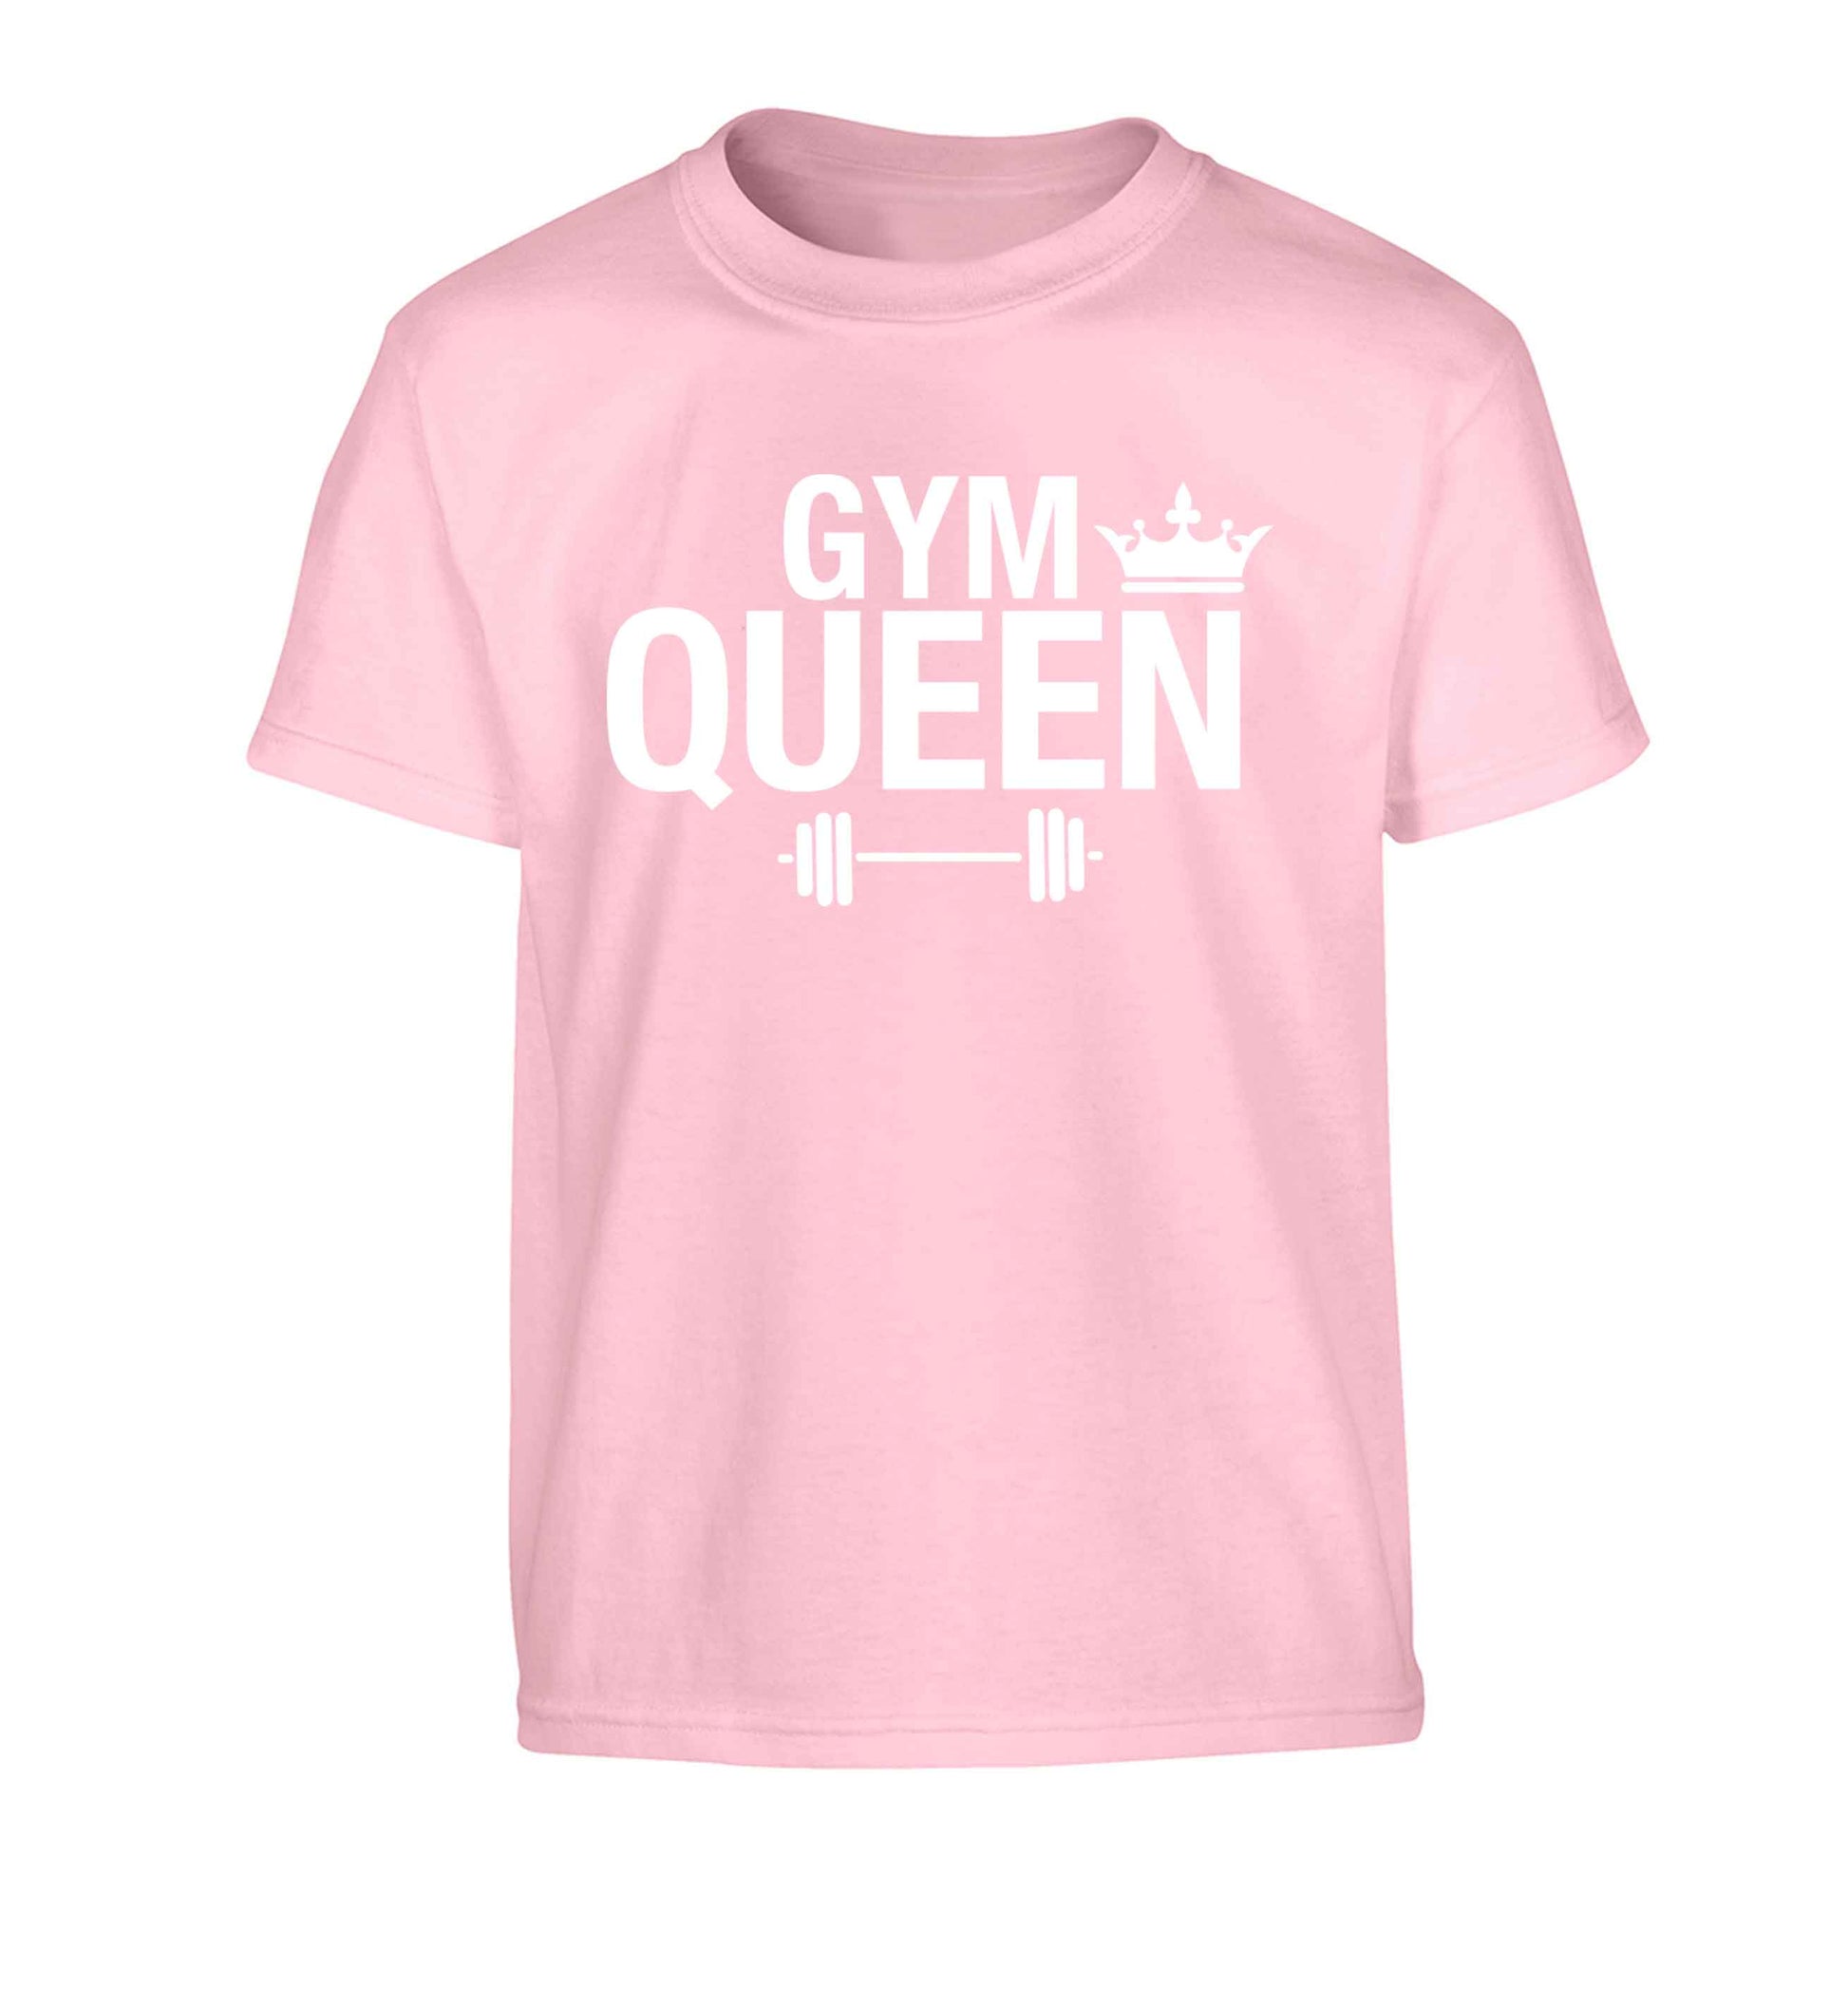 Gym queen Children's light pink Tshirt 12-13 Years